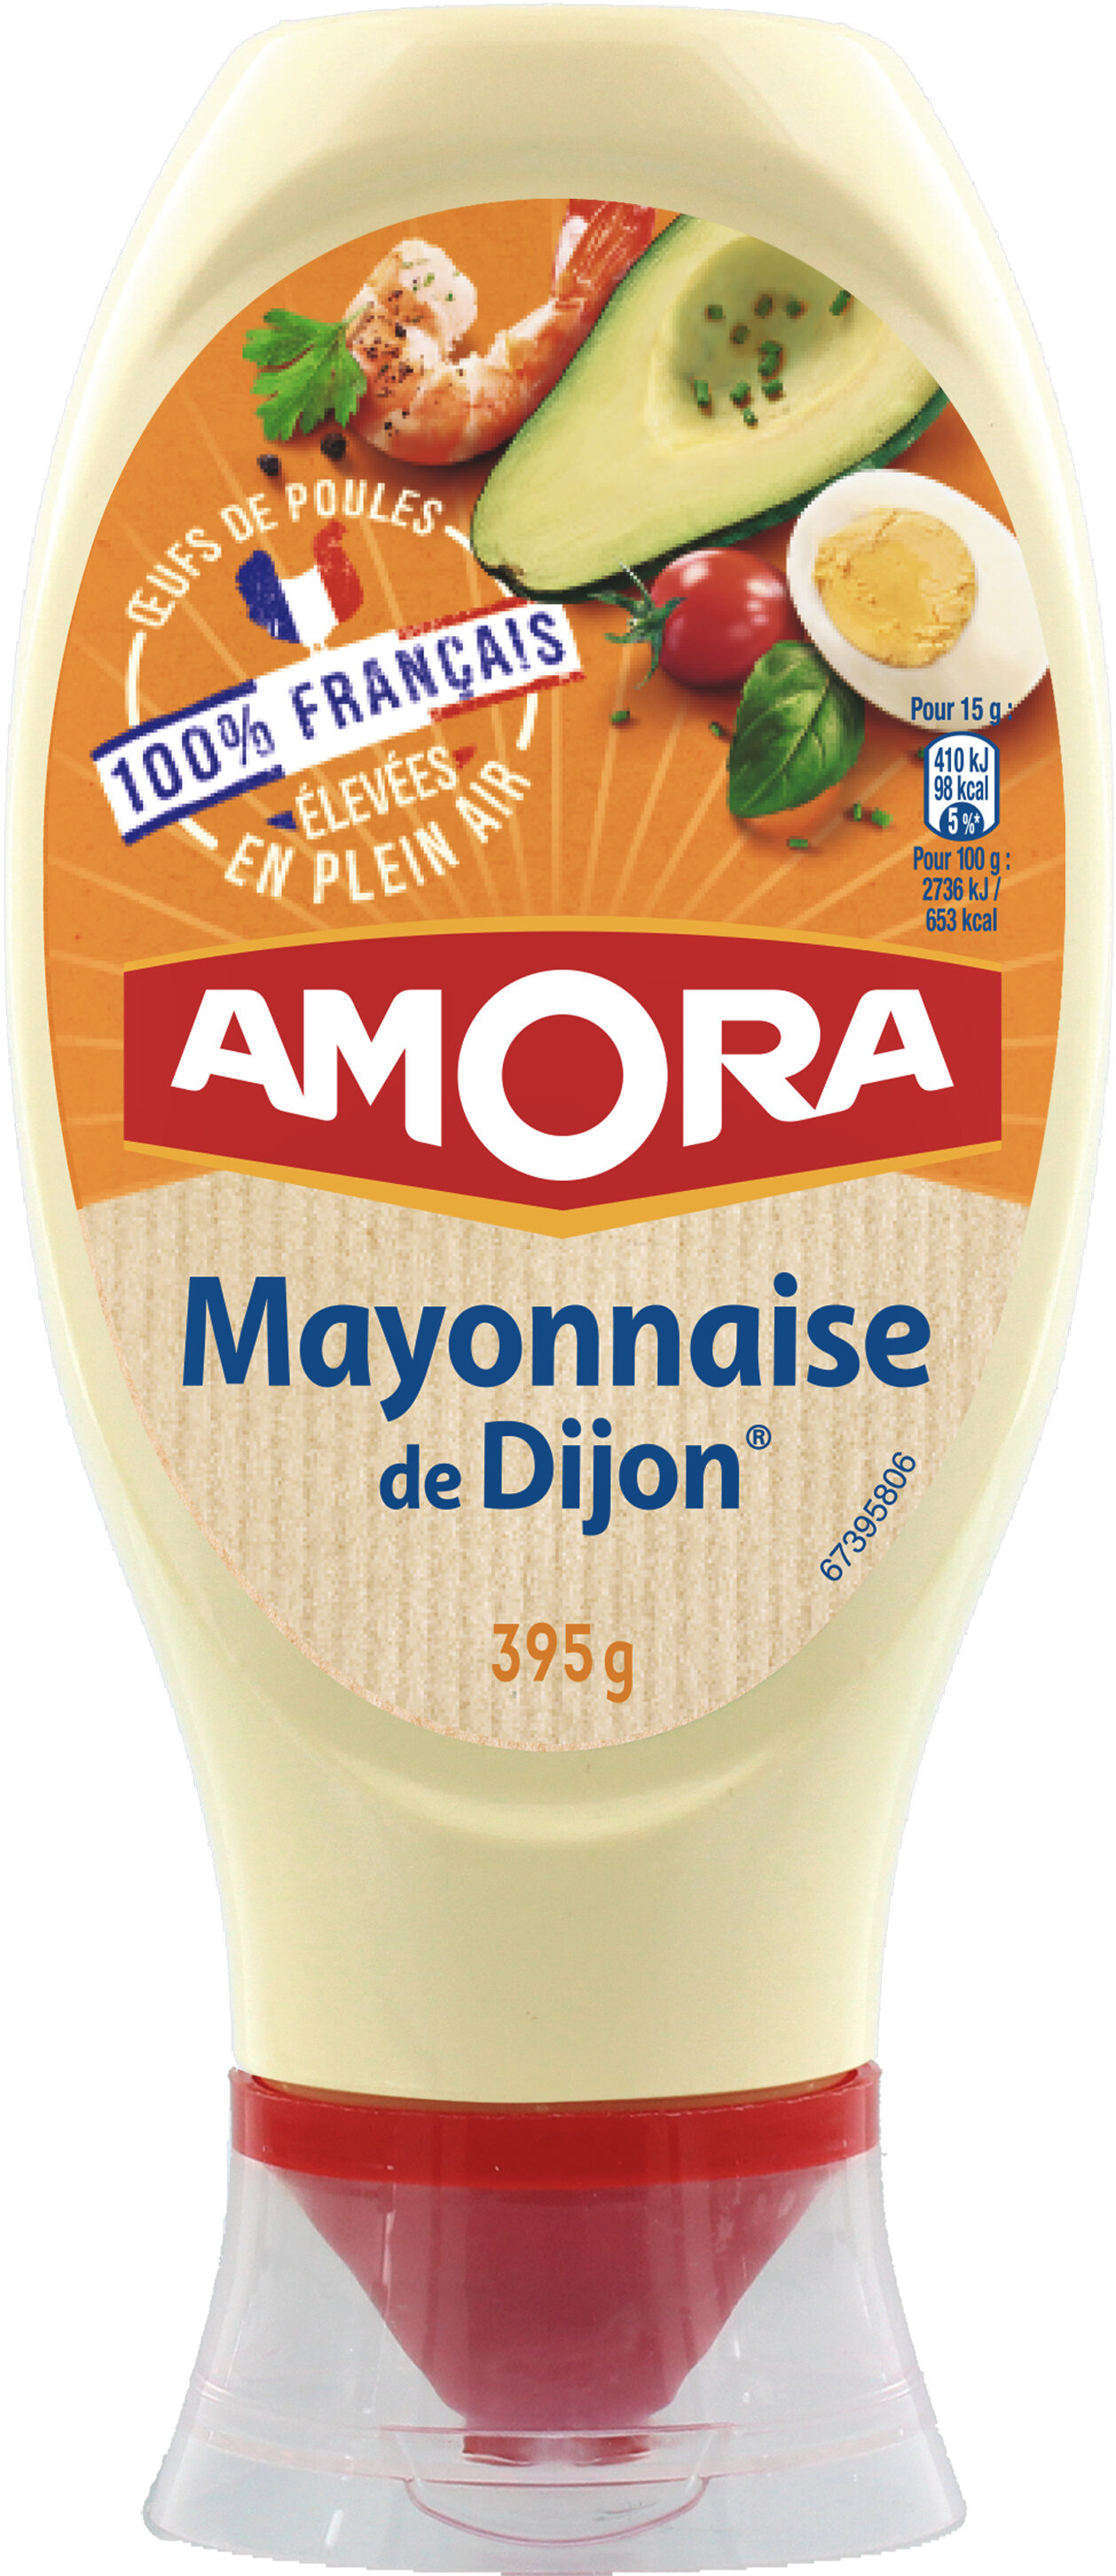 Amora Mayonnaise Dijon Nature Œufs Français Flacon Souple 685g - Product - fr